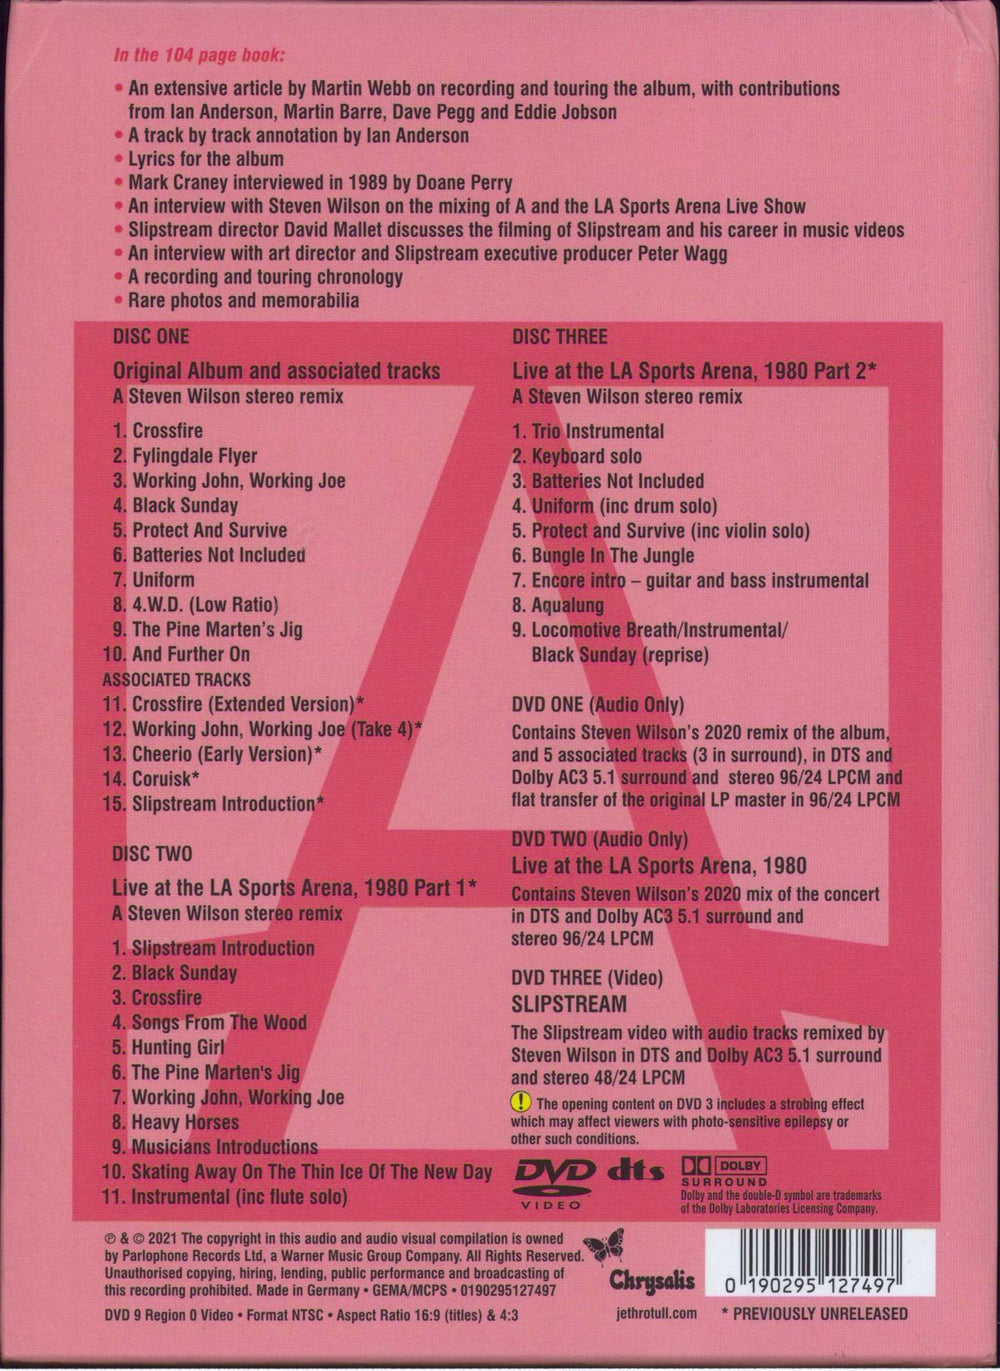 Jethro Tull A (A La Mode): The 40th Anniversary Edition UK 5-CD album set 0190295127497